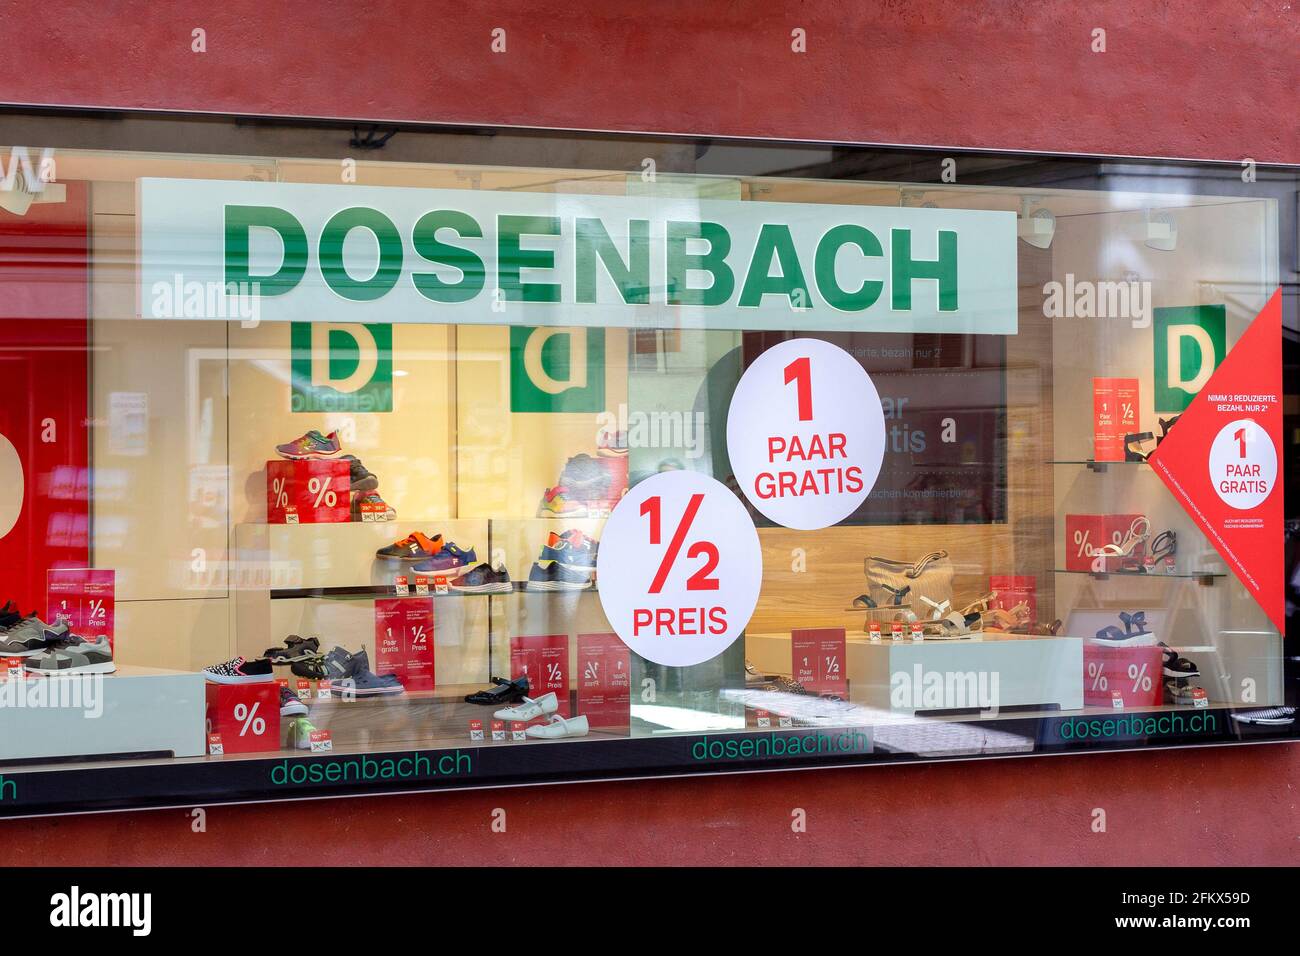 Dosenbach, magasin de chaussures en Suisse Banque D'Images